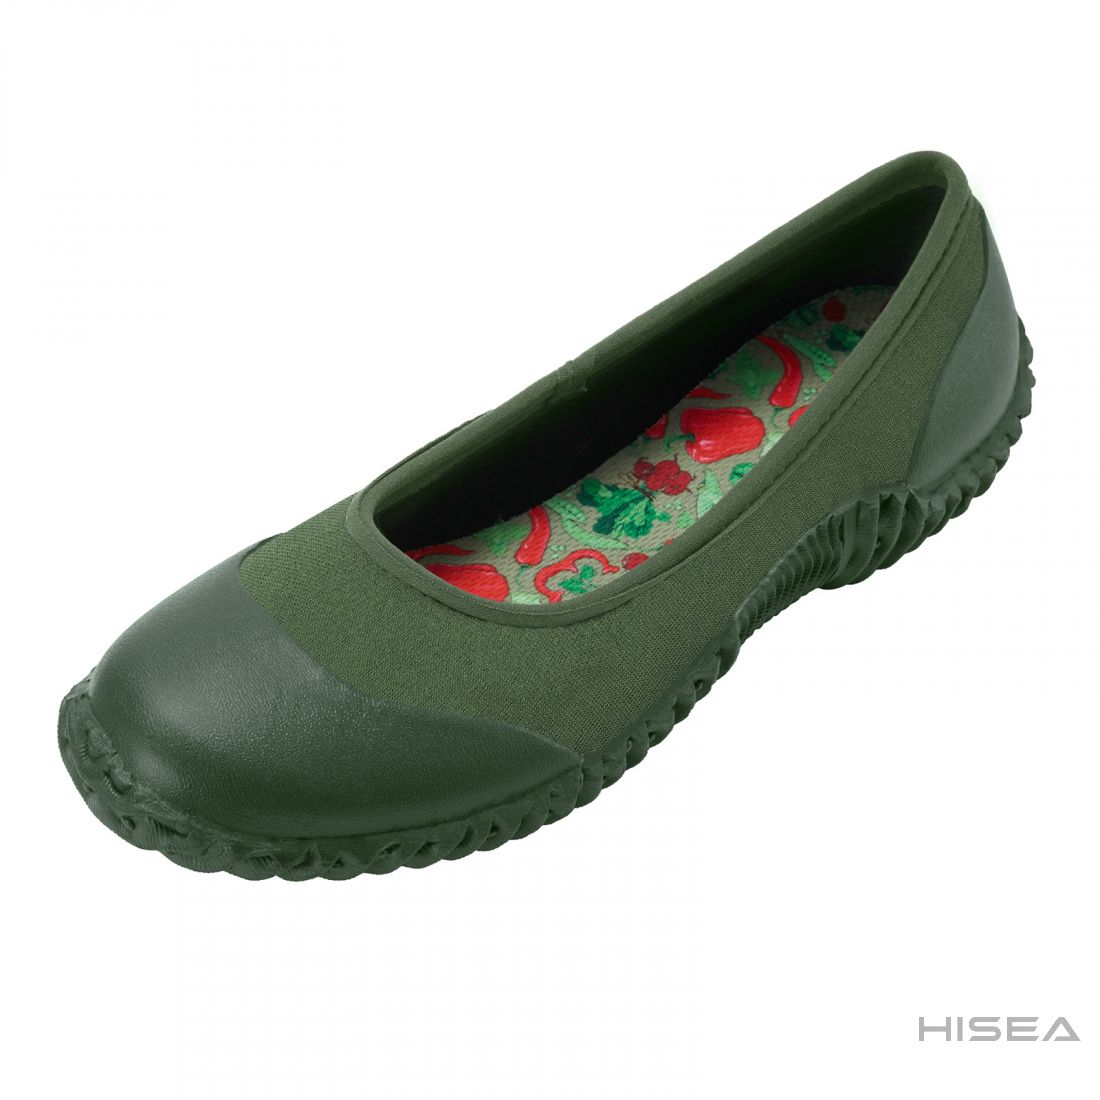 Womens Ankle Rain Boots Waterproof Garden Shoes Anti-Slip Rain Shoes Rubber Sole Unisex Deck Boots Large Size 10.5 